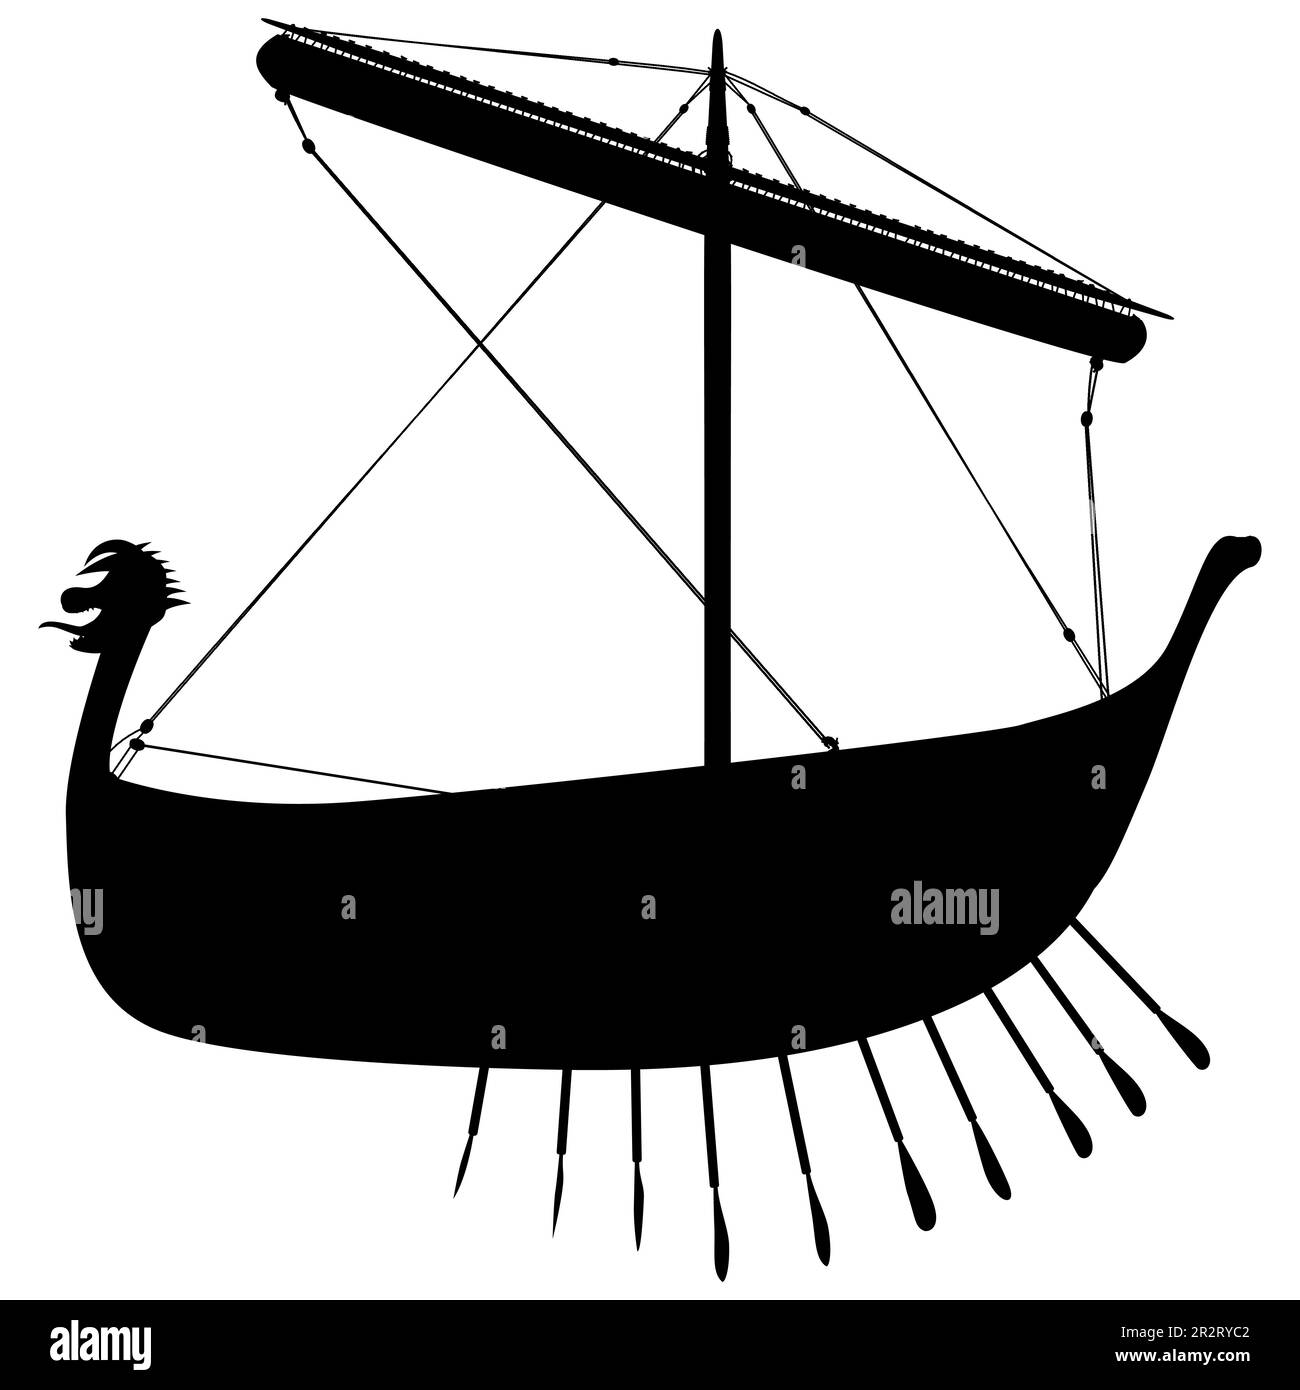 Vichingo scandinavo drakar silhouette. Nave a remi normanna. Illustrazione vettoriale isolata su sfondo bianco. Illustrazione Vettoriale